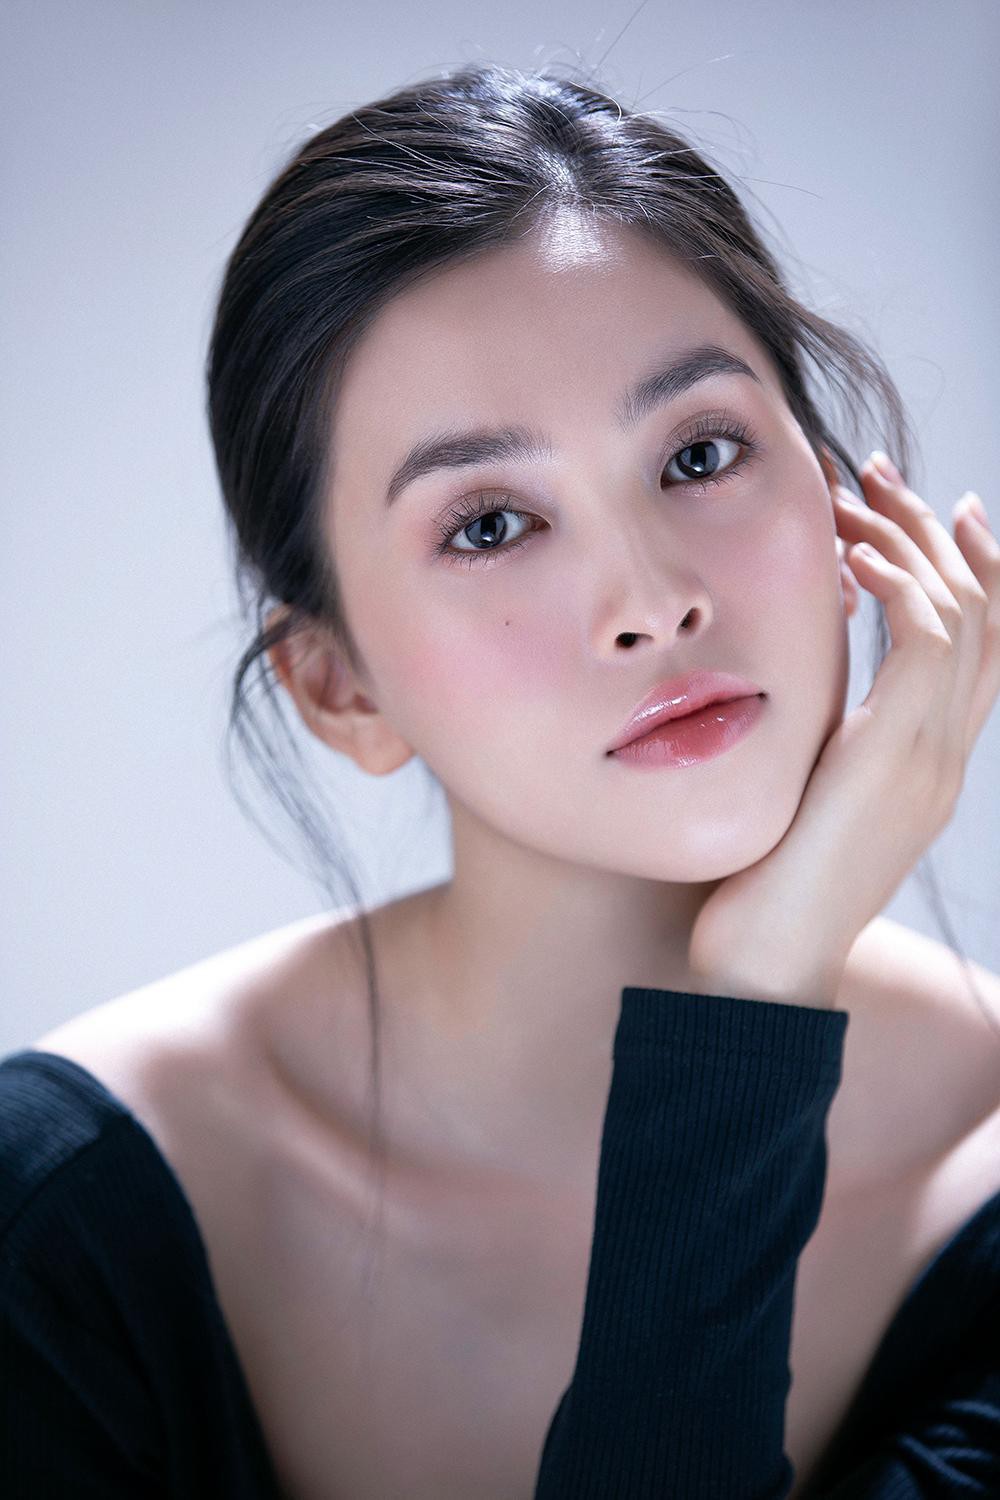 Trang điểm trong veo, Hoa hậu Tiểu Vy vẫn đẹp hút hồn với gương mặt đạt 'tỷ lệ vàng' - Ảnh 3.